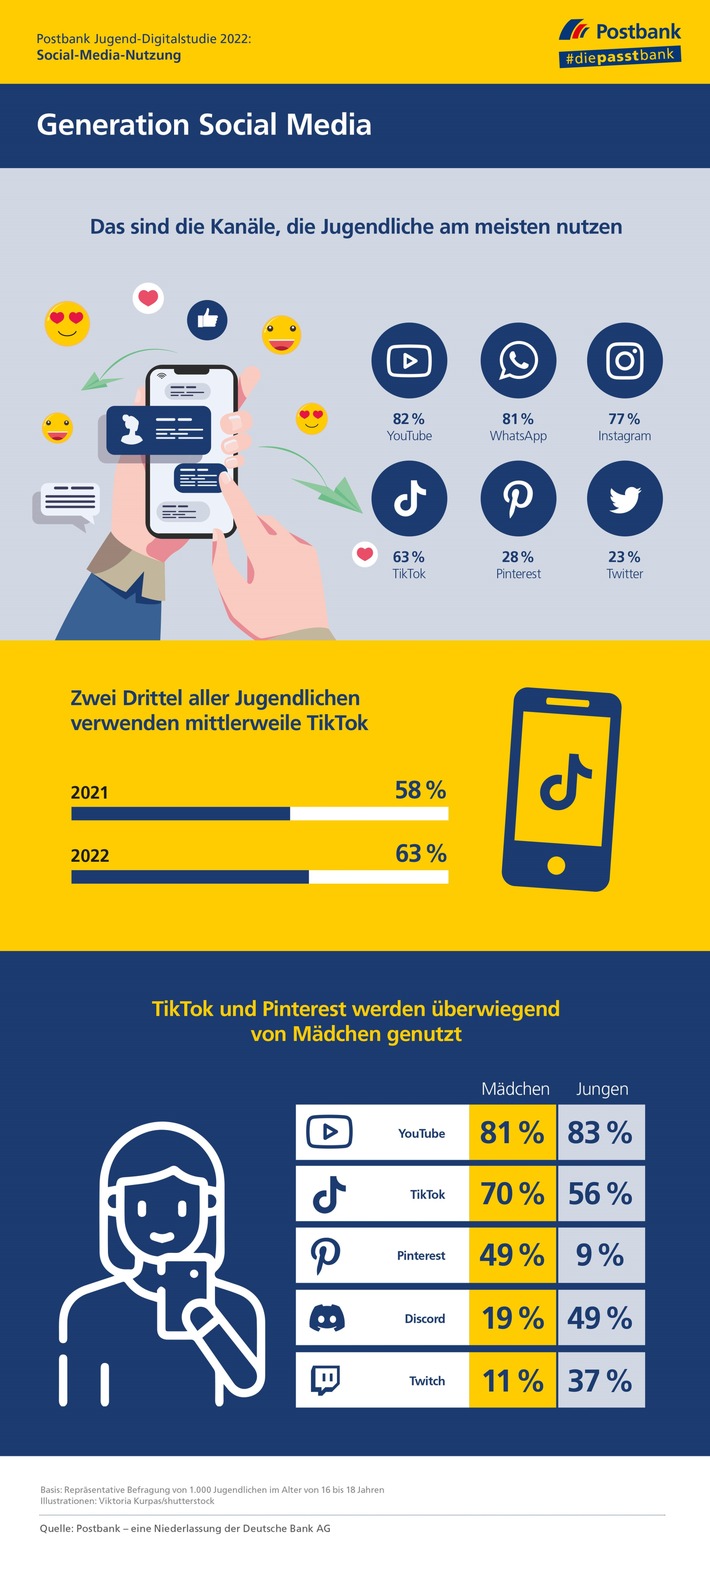 Postbank Jugend-Digitalstudie 2022: Infografik zur Social-Media-Nutzung von Jugendlichen